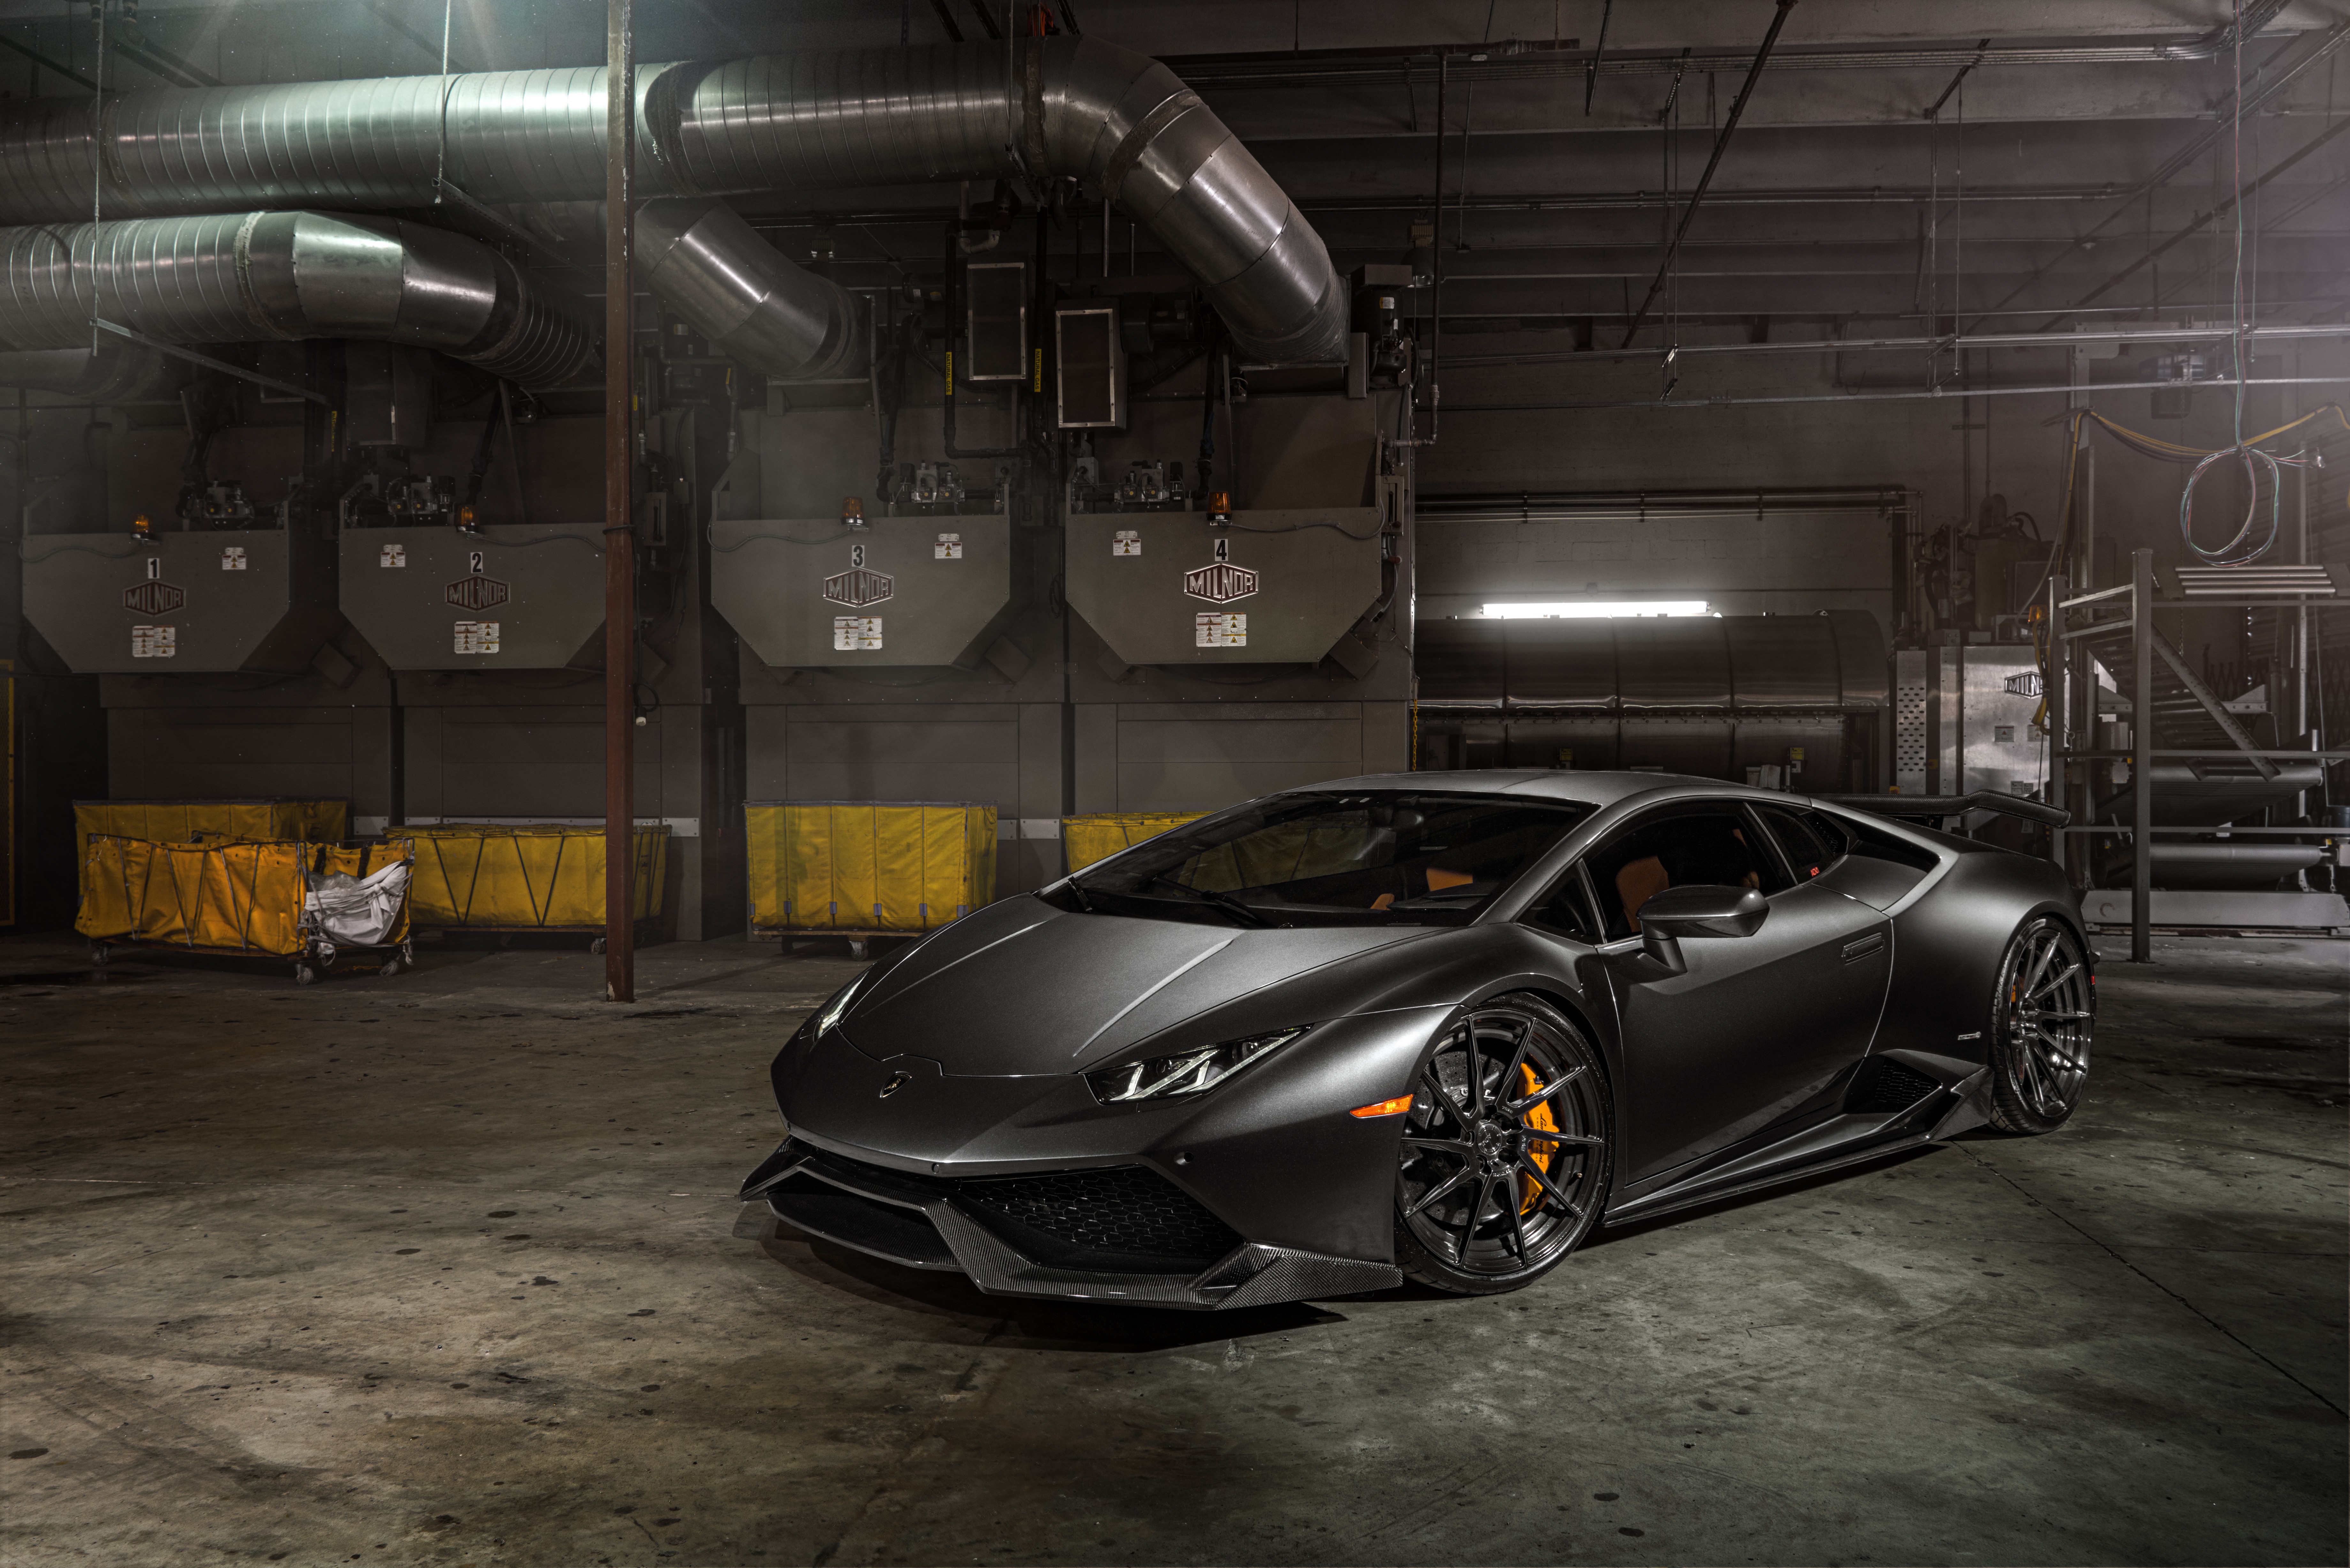 Lamborghini huracan black cars Wallpapers Download